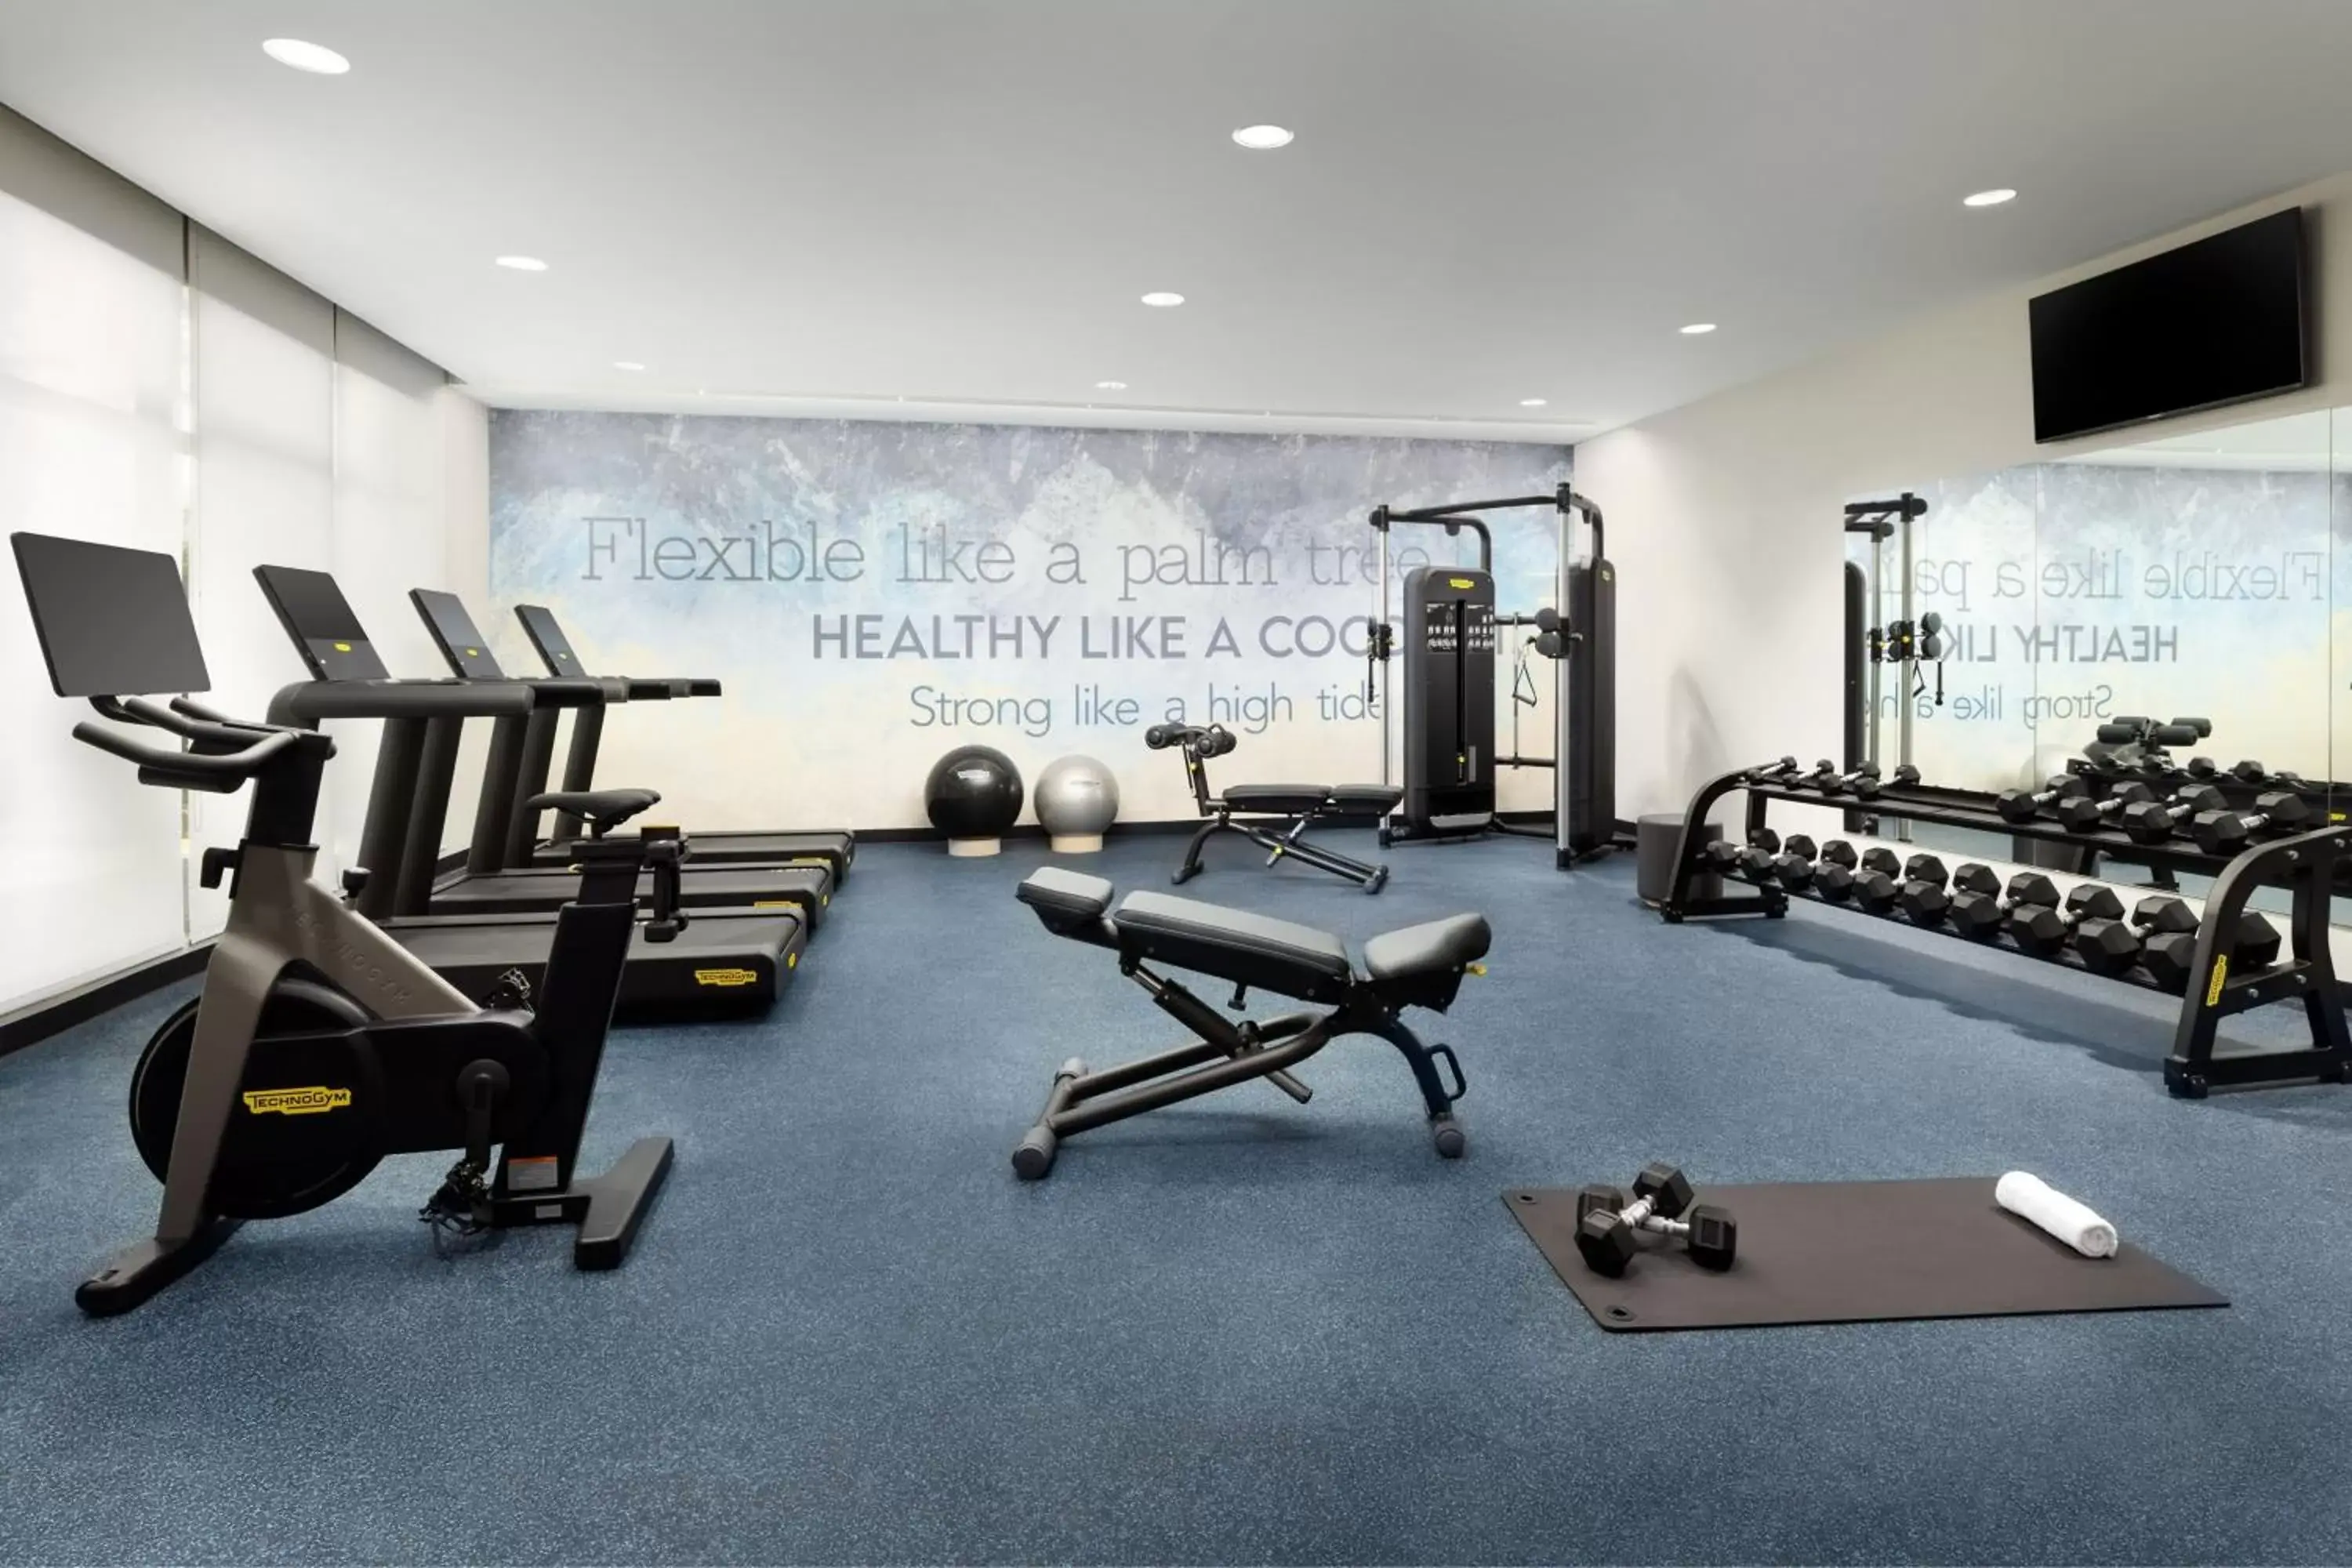 Fitness centre/facilities, Fitness Center/Facilities in Residence Inn by Marriott San Juan Isla Verde